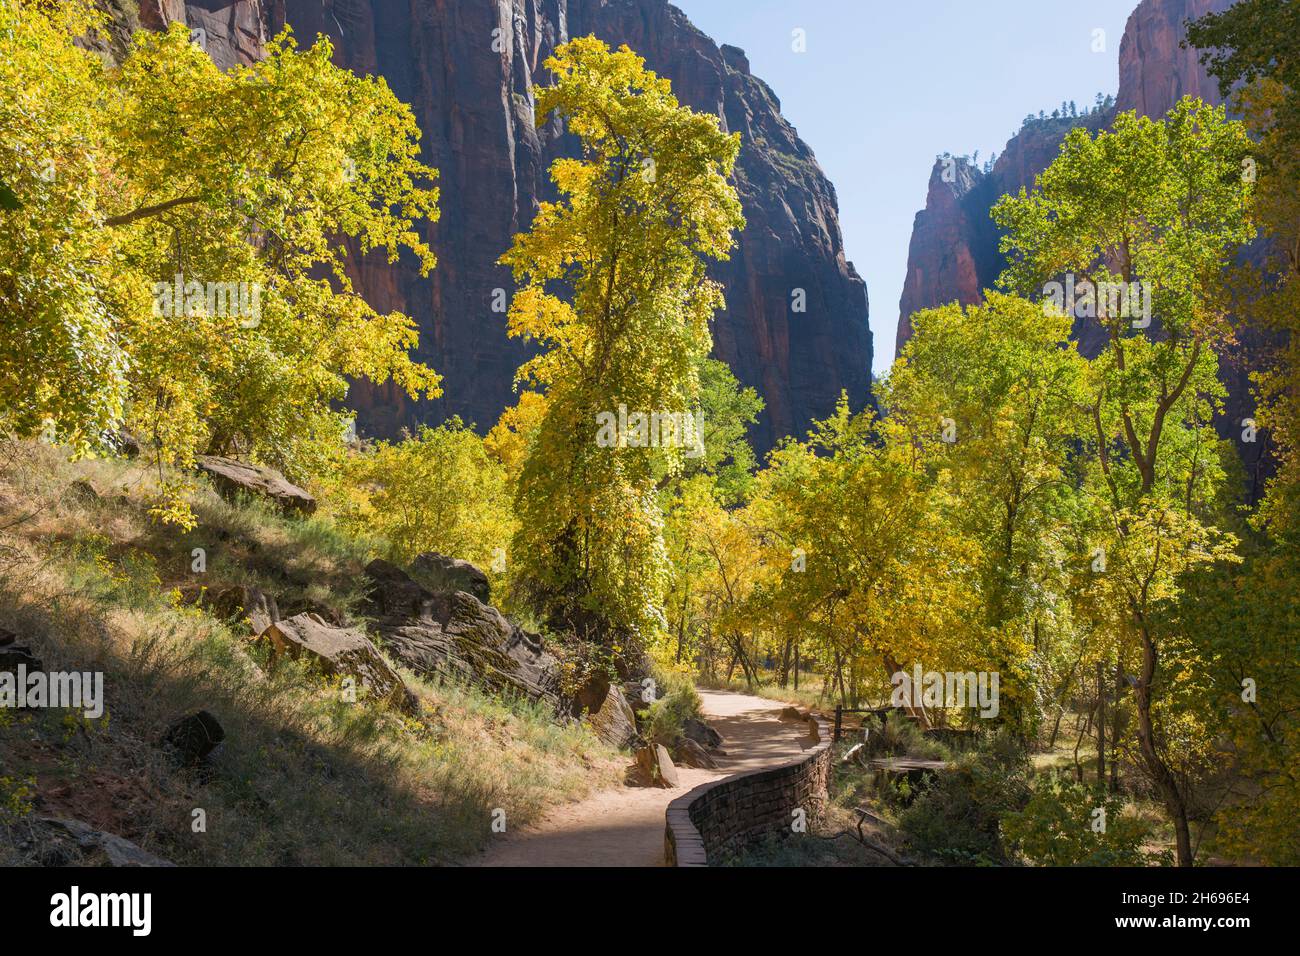 Zion National Park, Utah, USA. Ammira lungo la passeggiata lungo il fiume fino alle torreggianti scogliere di arenaria del Tempio di Sinawava, in autunno. Foto Stock